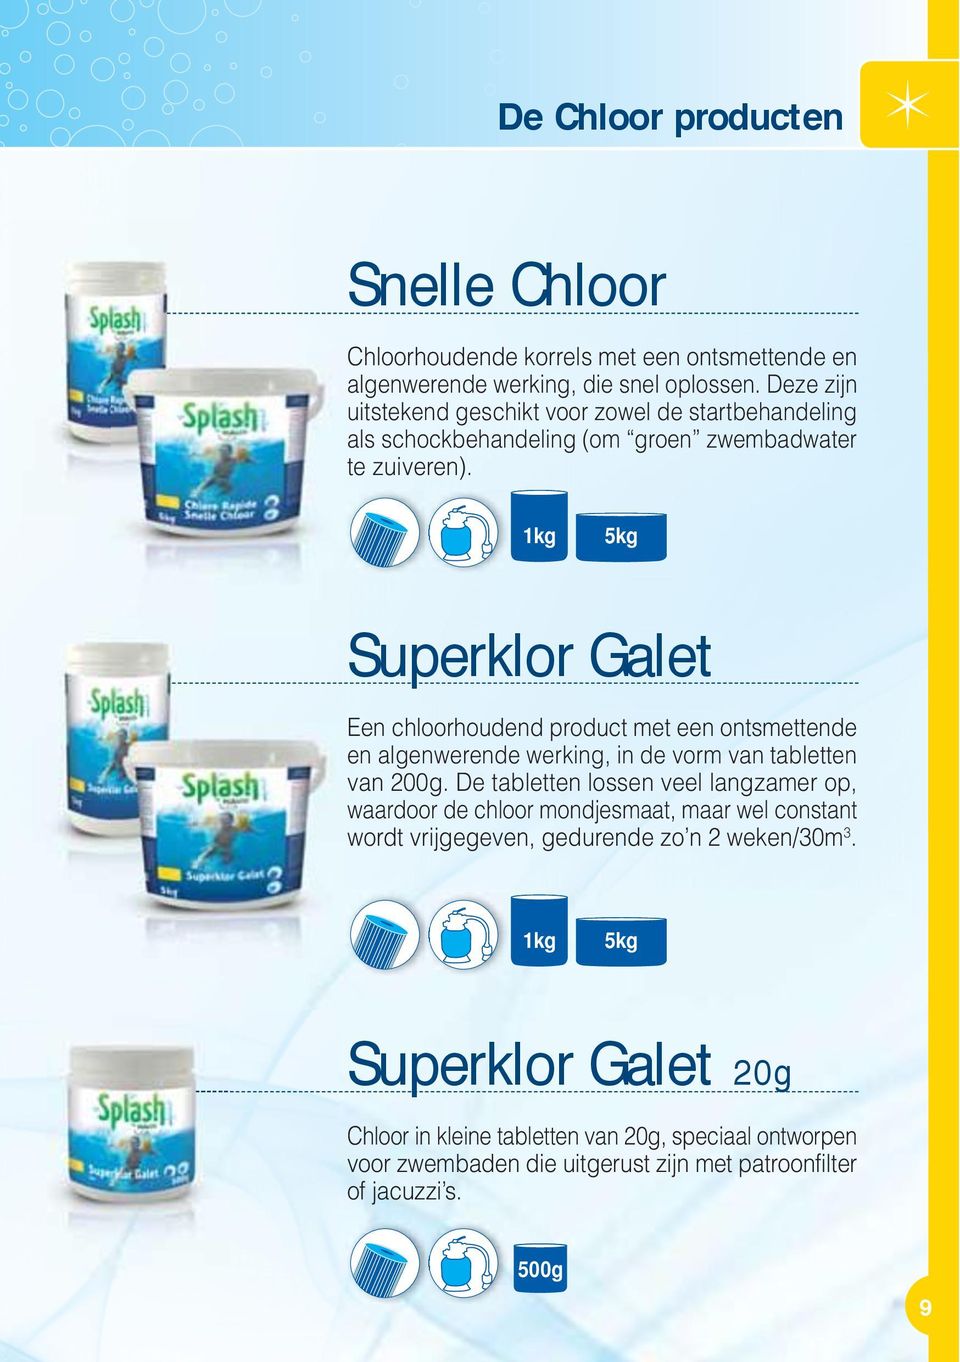 1kg 5kg Superklor Galet Een chloorhoudend product met een ontsmettende en algenwerende werking, in de vorm van tabletten van 200g.